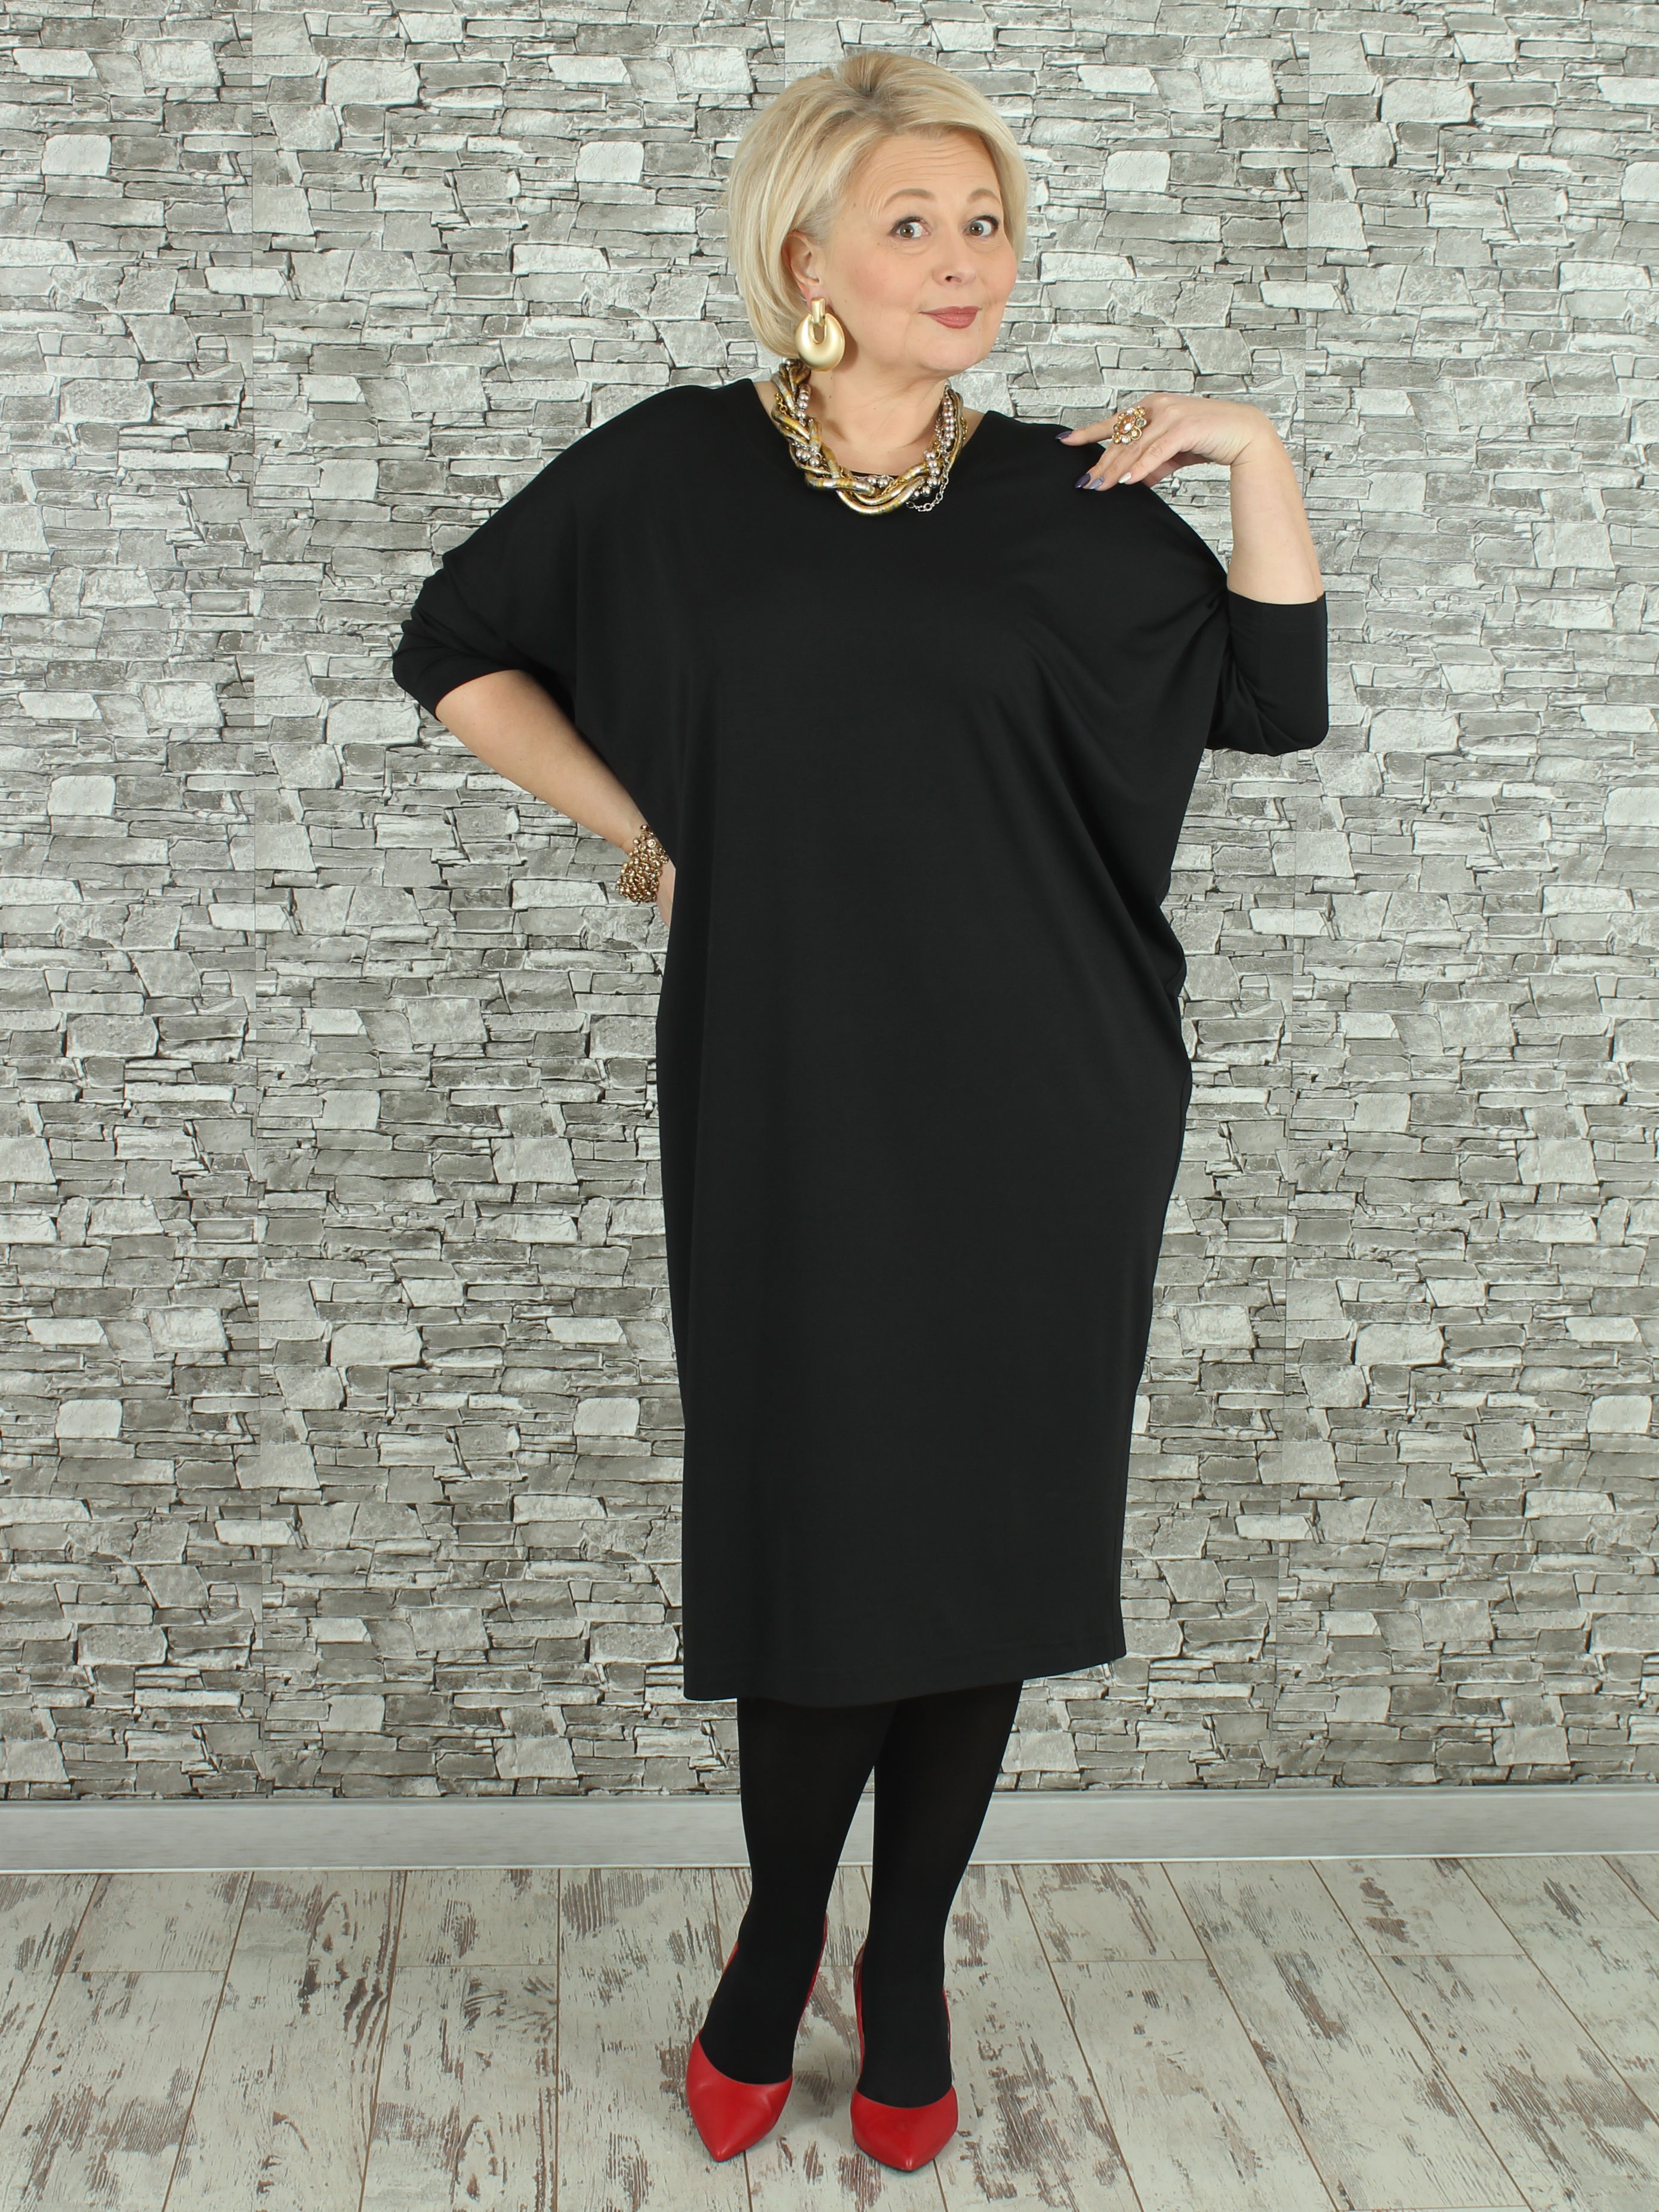 Женское платье NadiN 1629/1 56 размер Чёрное